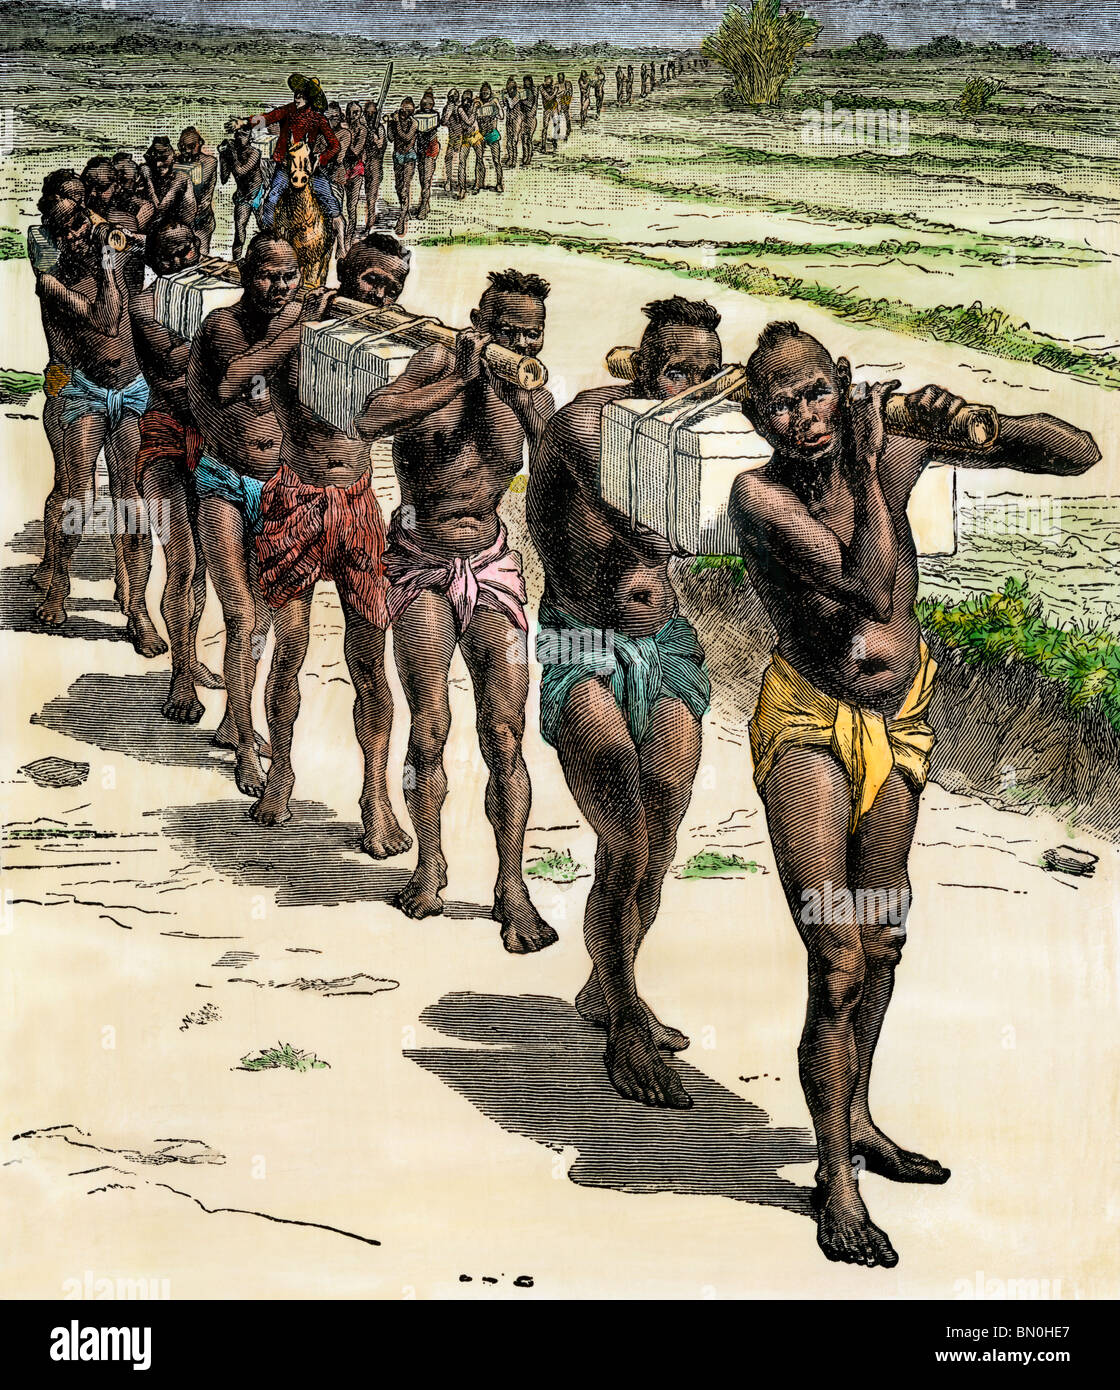 L'explorateur anglais Richard Burton, c'est marche vers l'Afrique centrale, 1850. À la main, gravure sur bois Banque D'Images